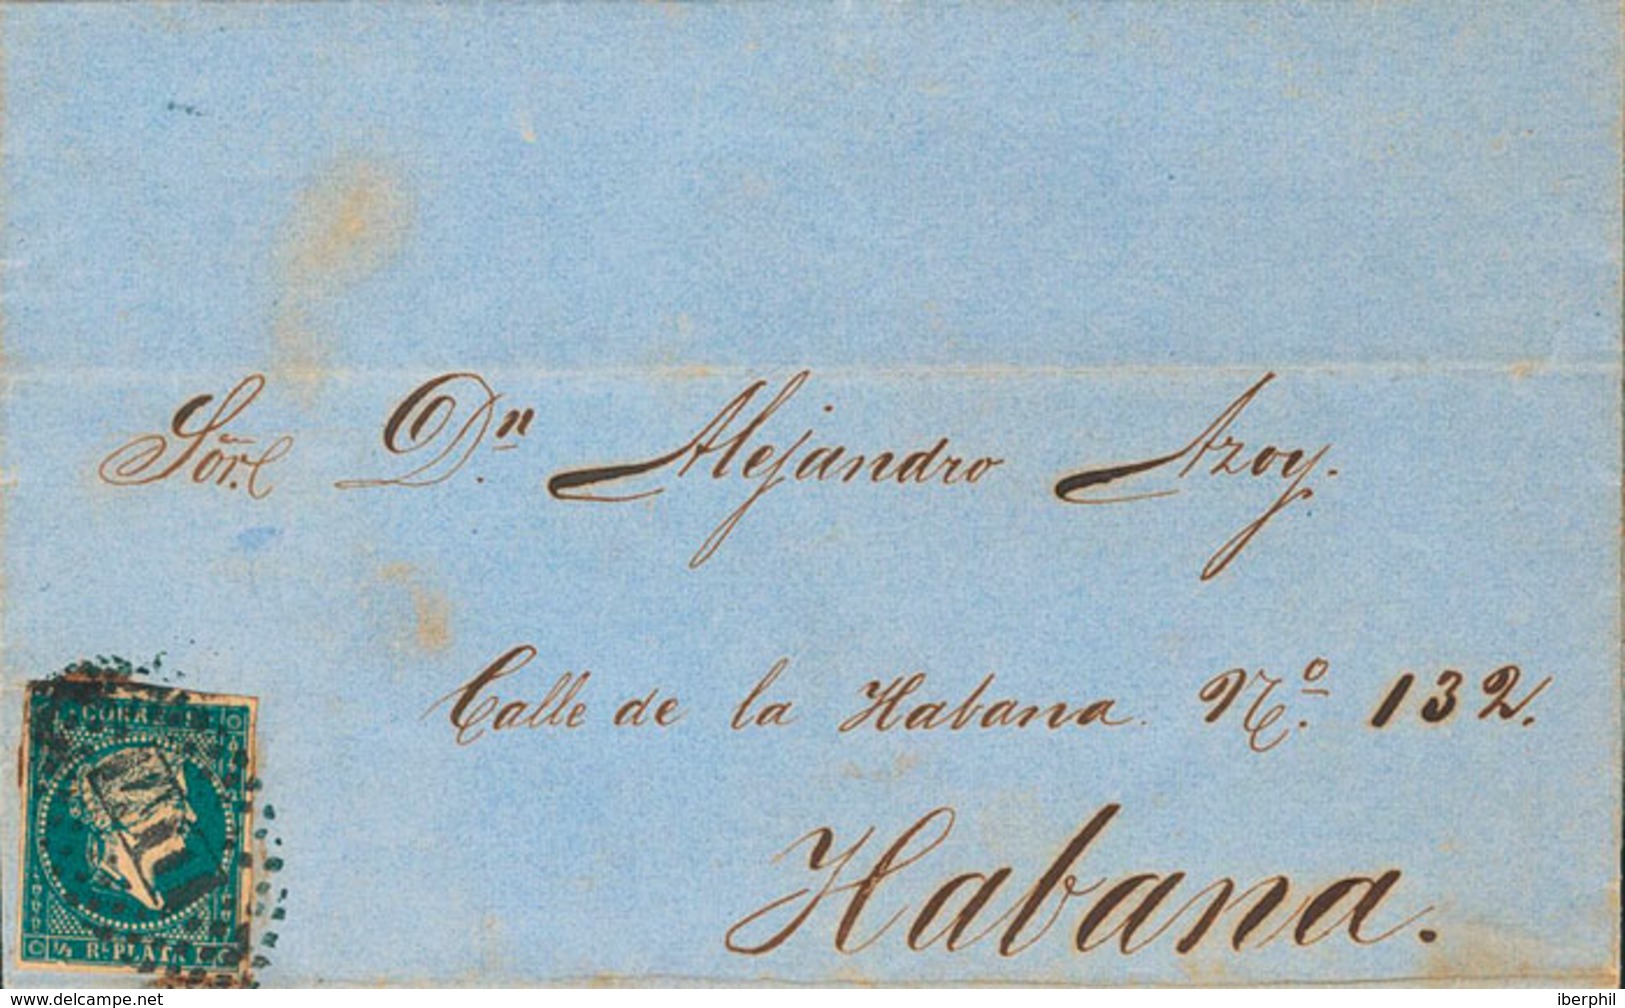 1294 1861. Sobre Ant.7. ½ Real Azul. Dirigida A LA HABANA. Matasello Oval De Puntos D.M., Utilizado En Los Vapores De La - Cuba (1874-1898)